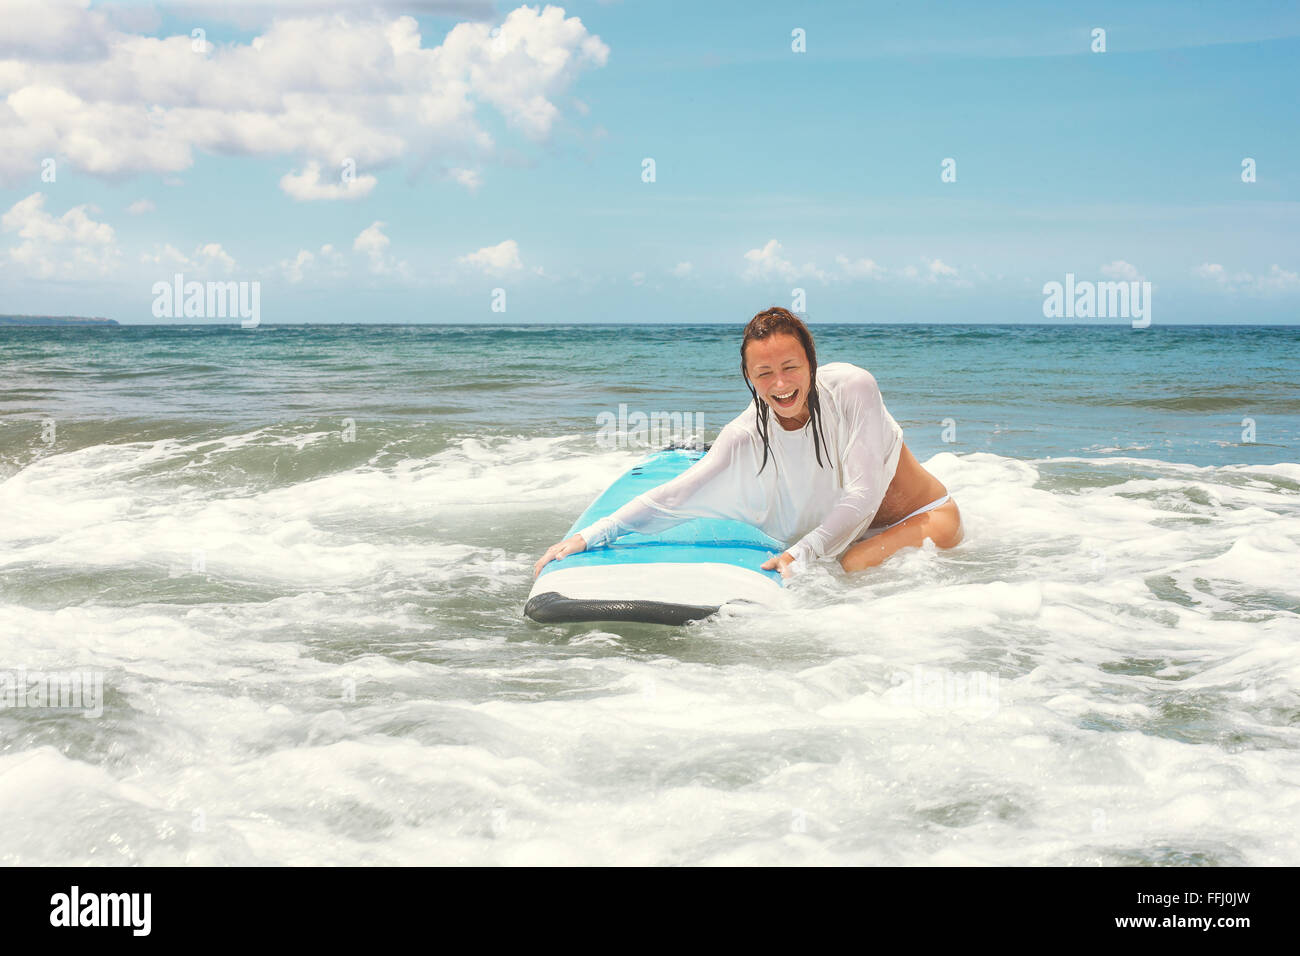 Mädchen auf den Wellen im Ozean mit ihrem Surfbrett. Stock Bild Stockfoto